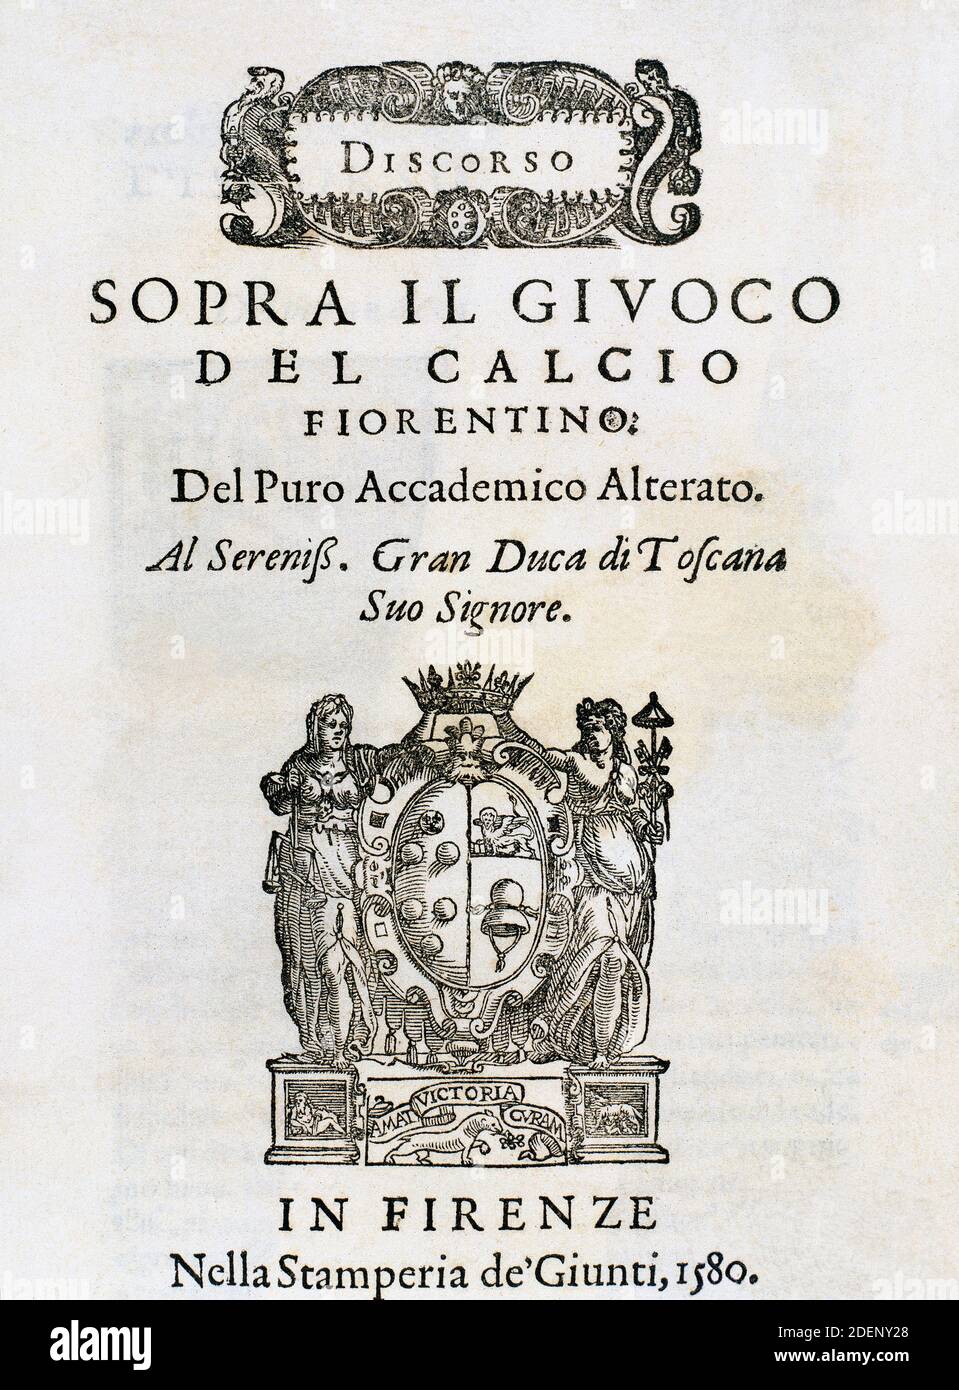 Discorso sopra il Giuoco del Calcio Fiorentino. Del Puro Accademico Alterato. Cover of the book written by Giovanni de Bardi (1534-1612). Printed in Florence by Giunti in 1580. Stock Photo